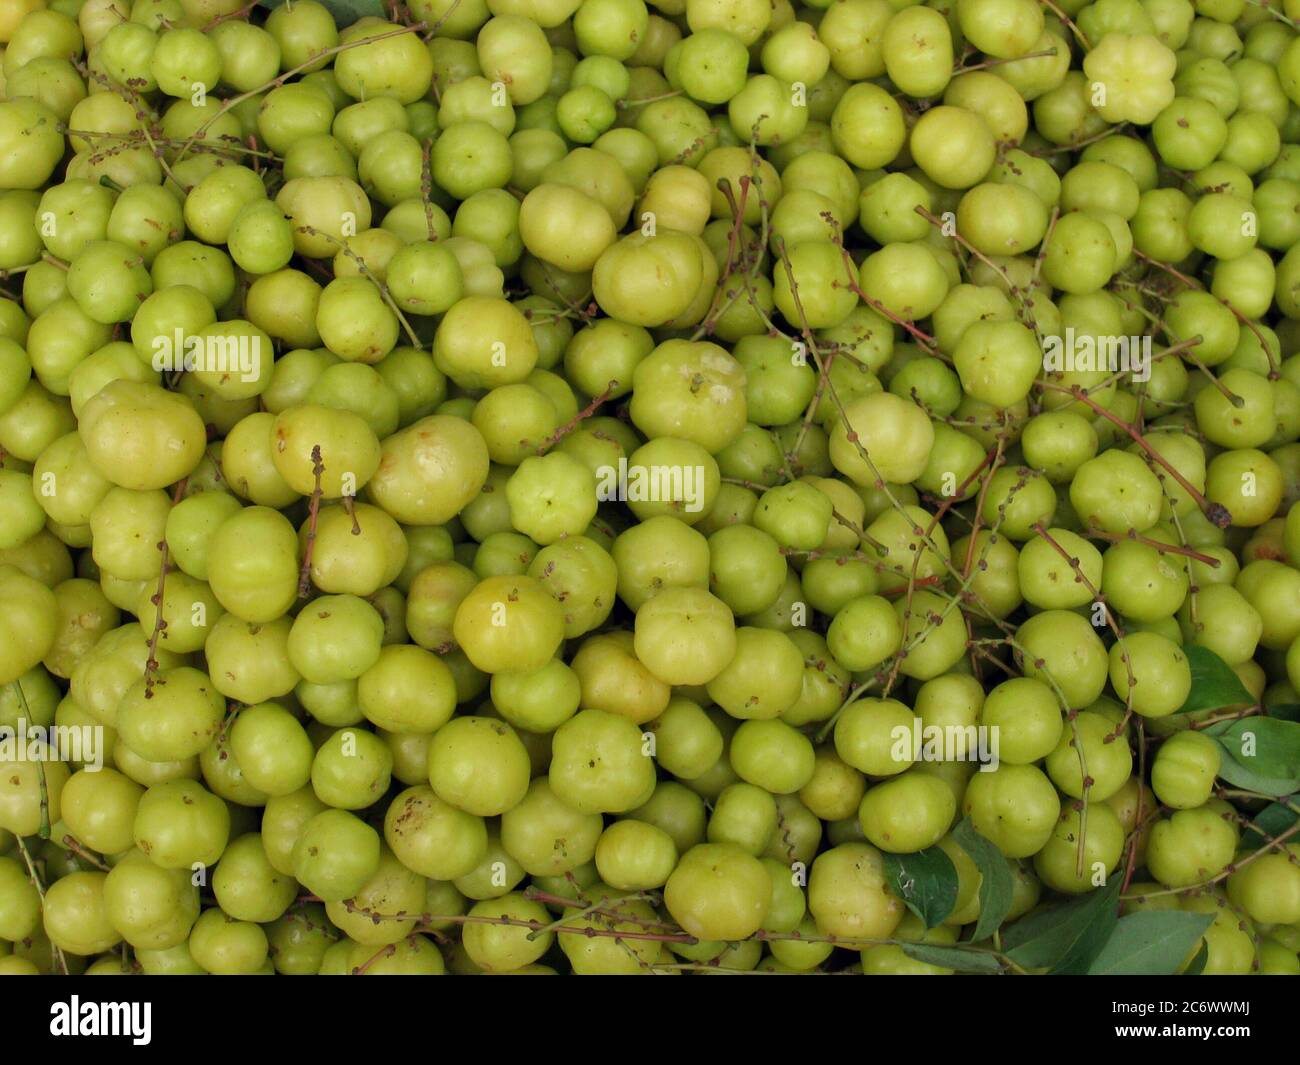 Fruits populaires localement connus sous le nom d'ur boroi au Bangladesh. Il a le goût aigre et il a beaucoup de vitamine C. 14 mars 2007. Banque D'Images